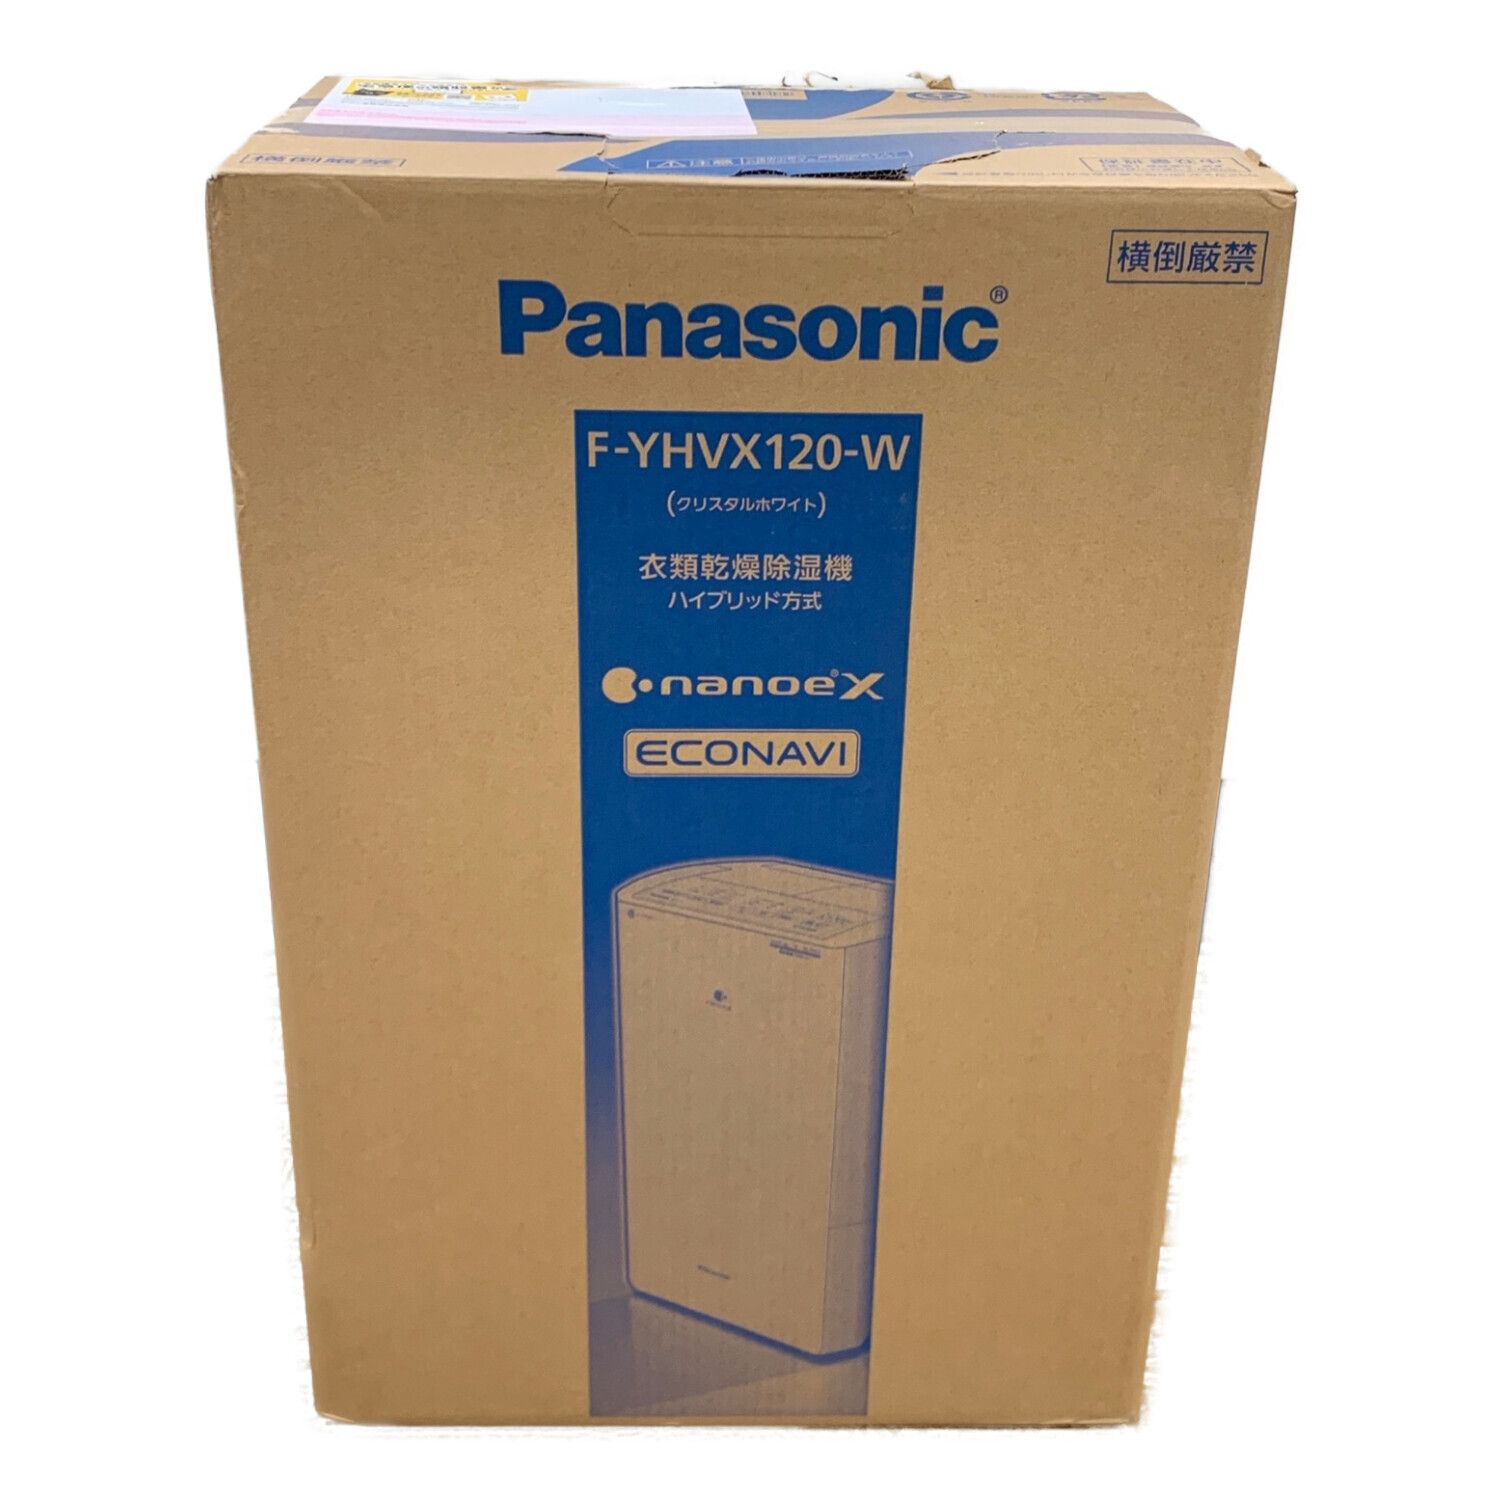 新品・未開封Panasonic 衣類乾燥除湿機F-YHVX120-W WHITEパナソニック